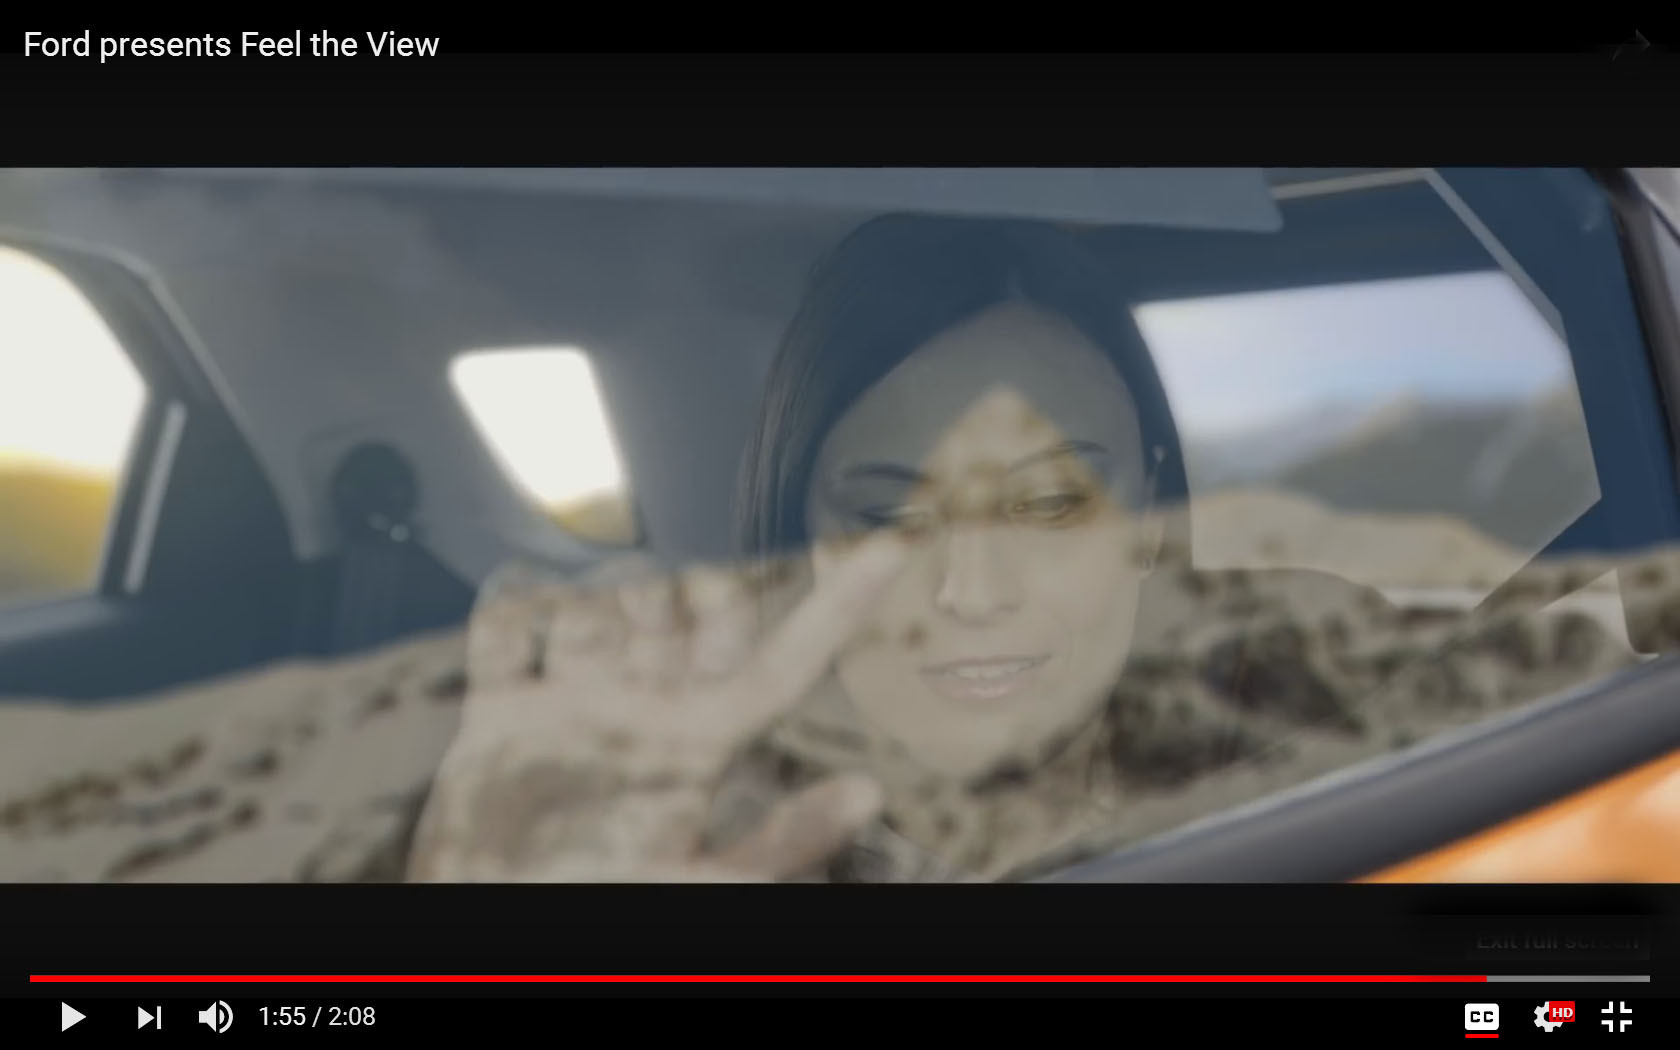 Οι τυφλοί «νιώθουν» τη θέα: το εξυπνο παράθυρο της Ford [video]